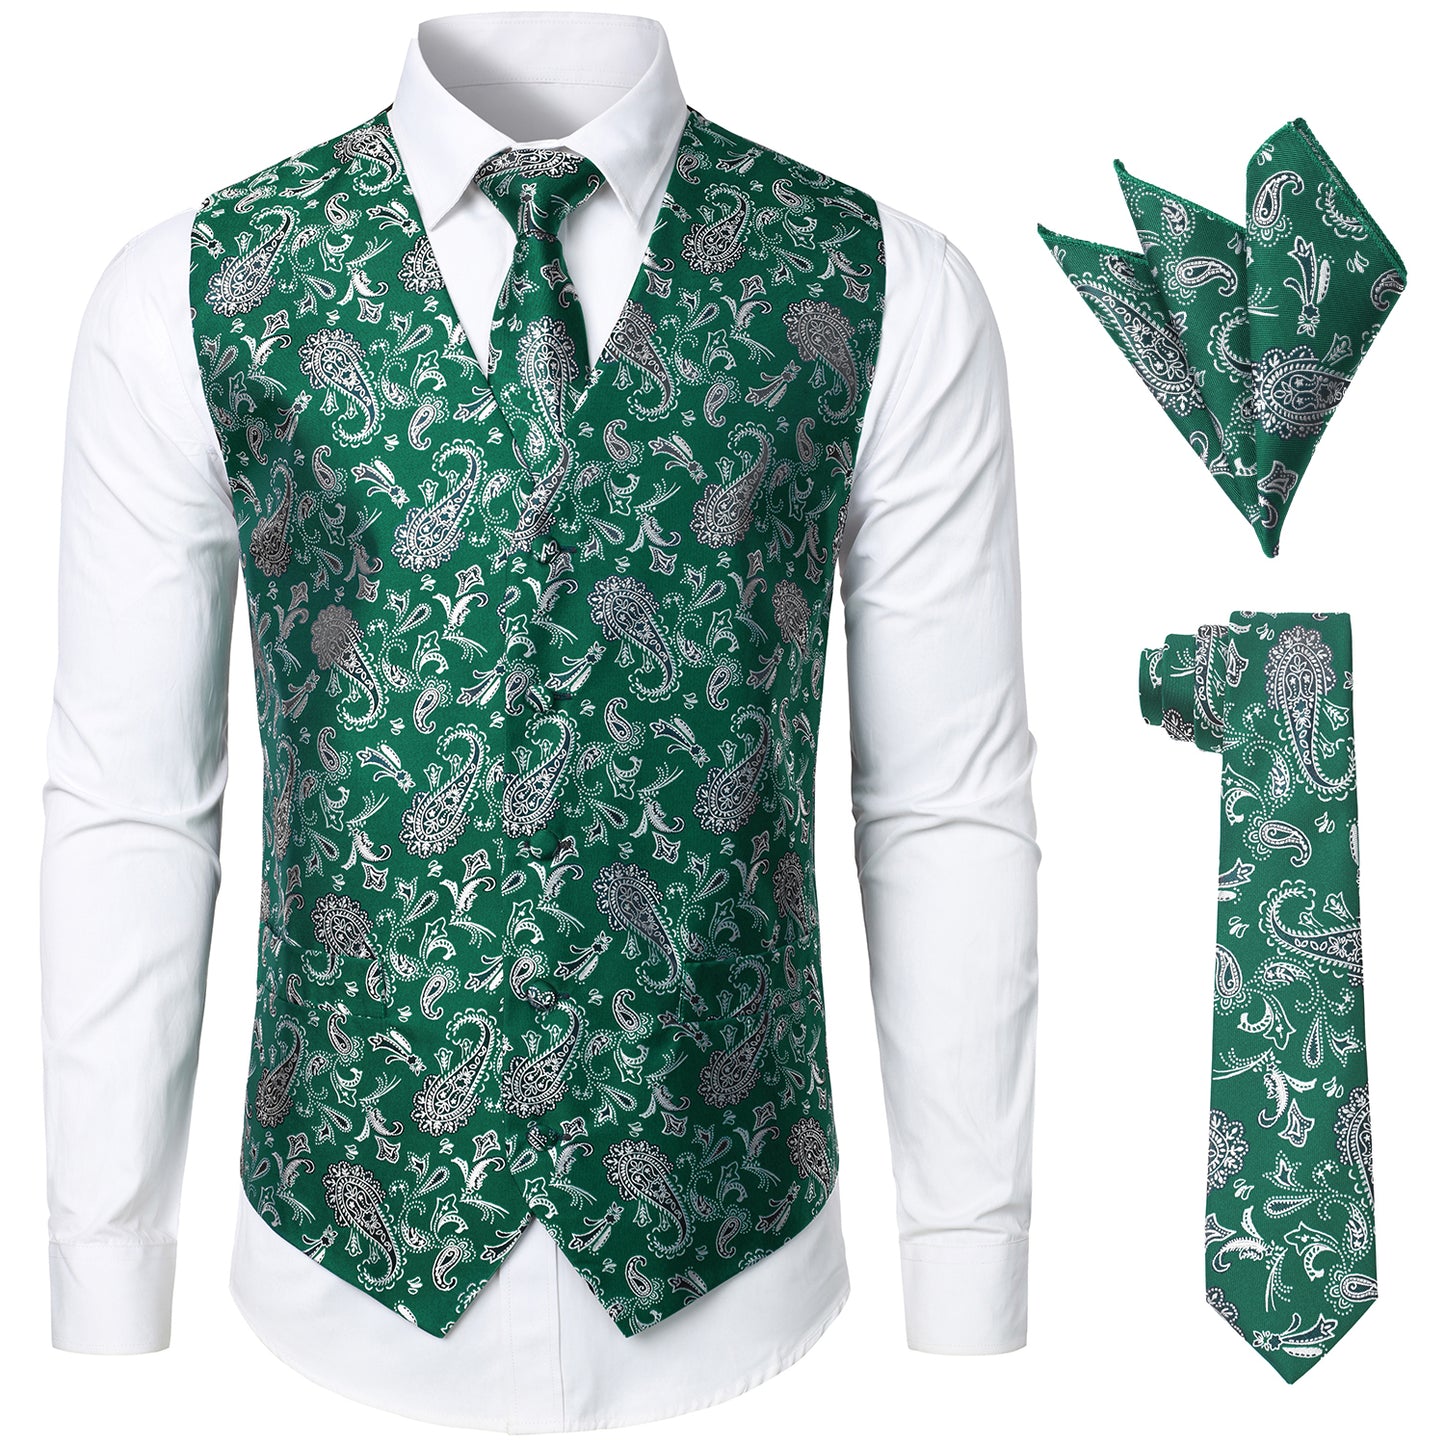 JOGAL Men's 3pc Paisley Vest Necktie Pocket Square Set for Suit or Tuxedo